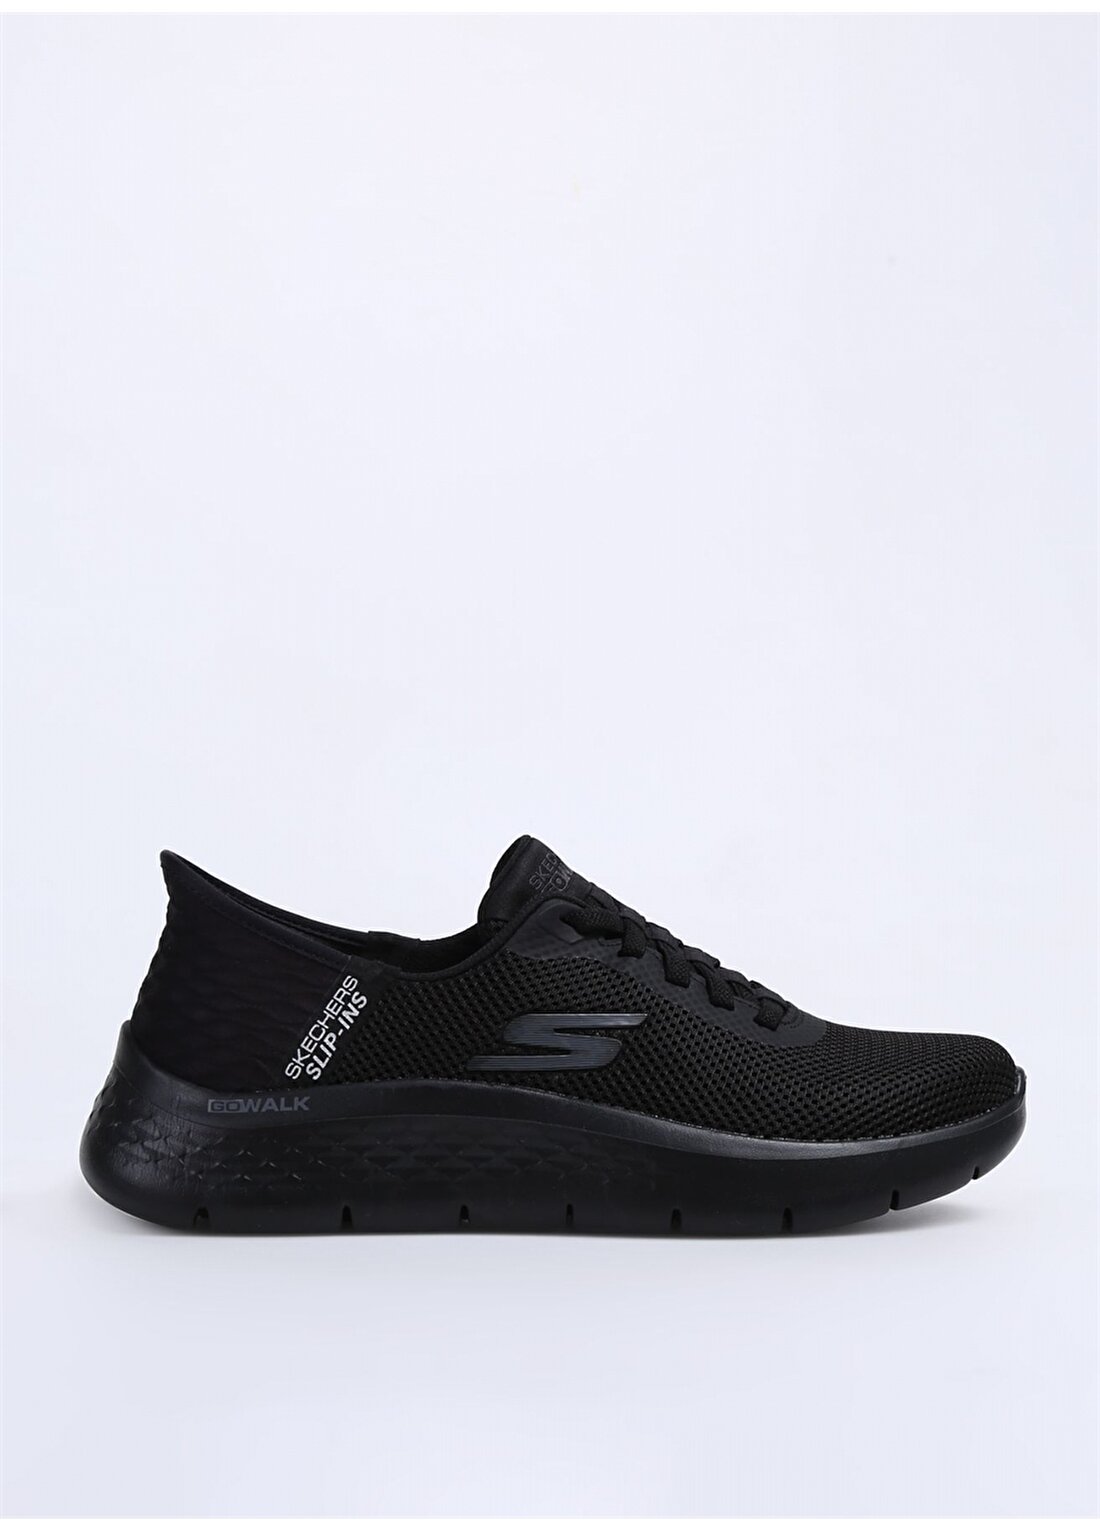 Skechers Siyah Erkek Lifestyle Ayakkabı 216496TK BBK GO WALK FLEX